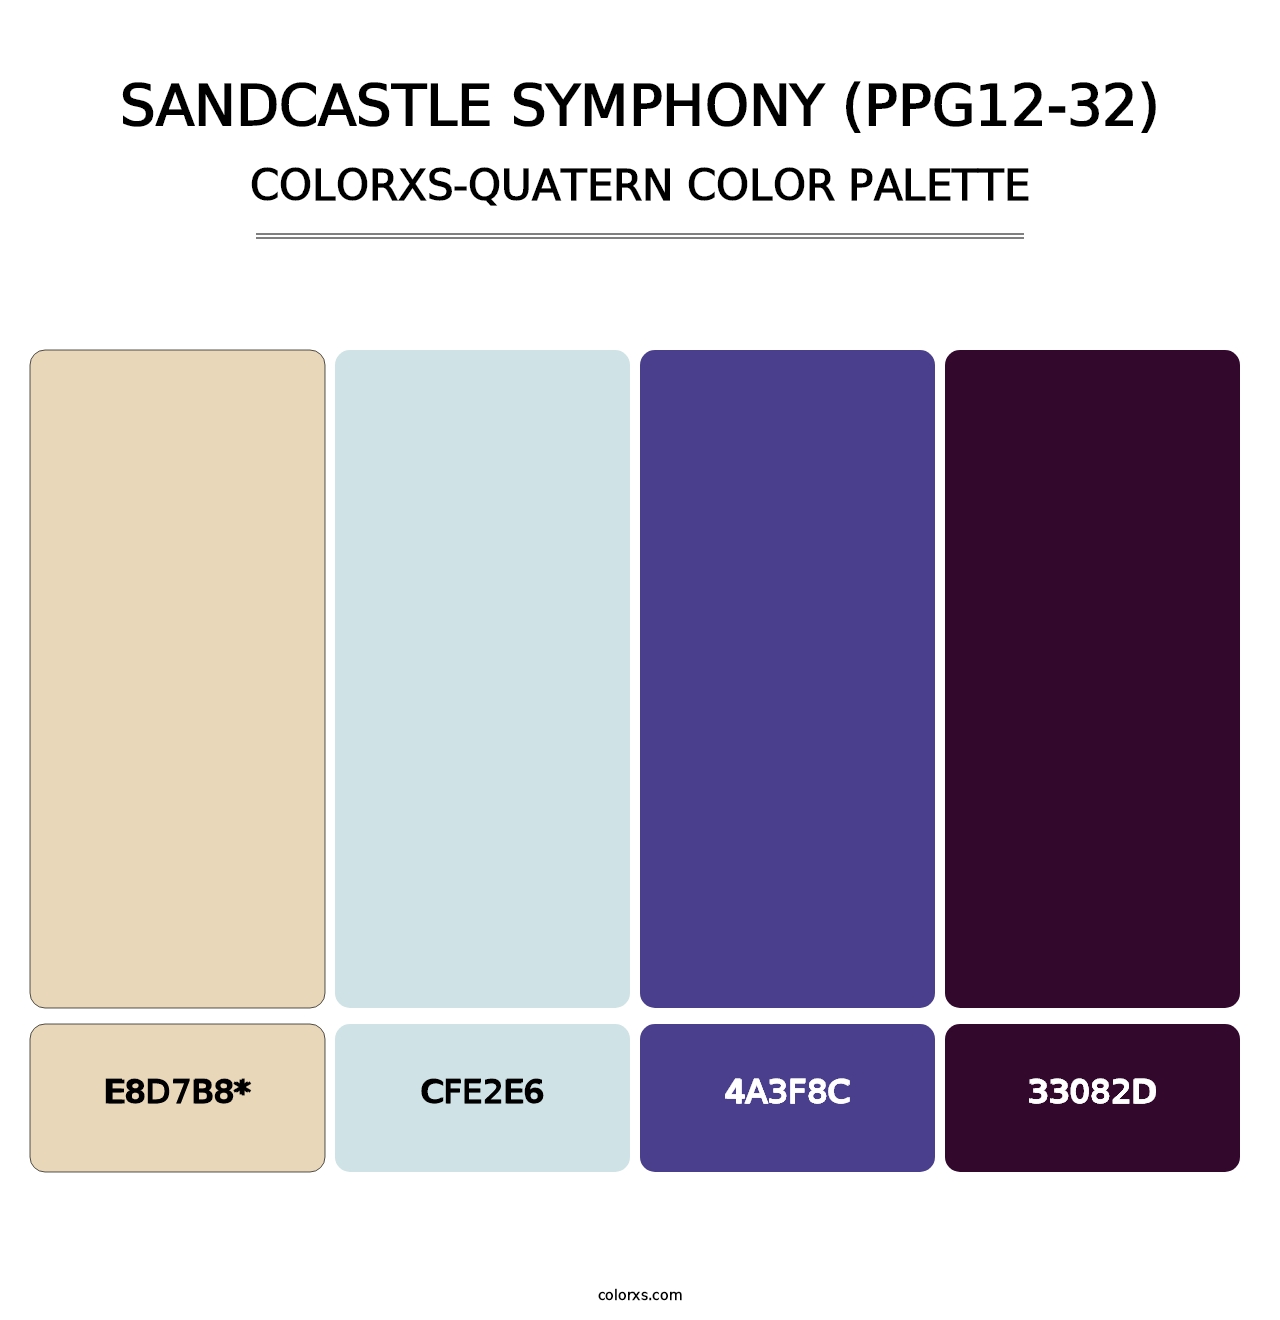 Sandcastle Symphony (PPG12-32) - Colorxs Quad Palette